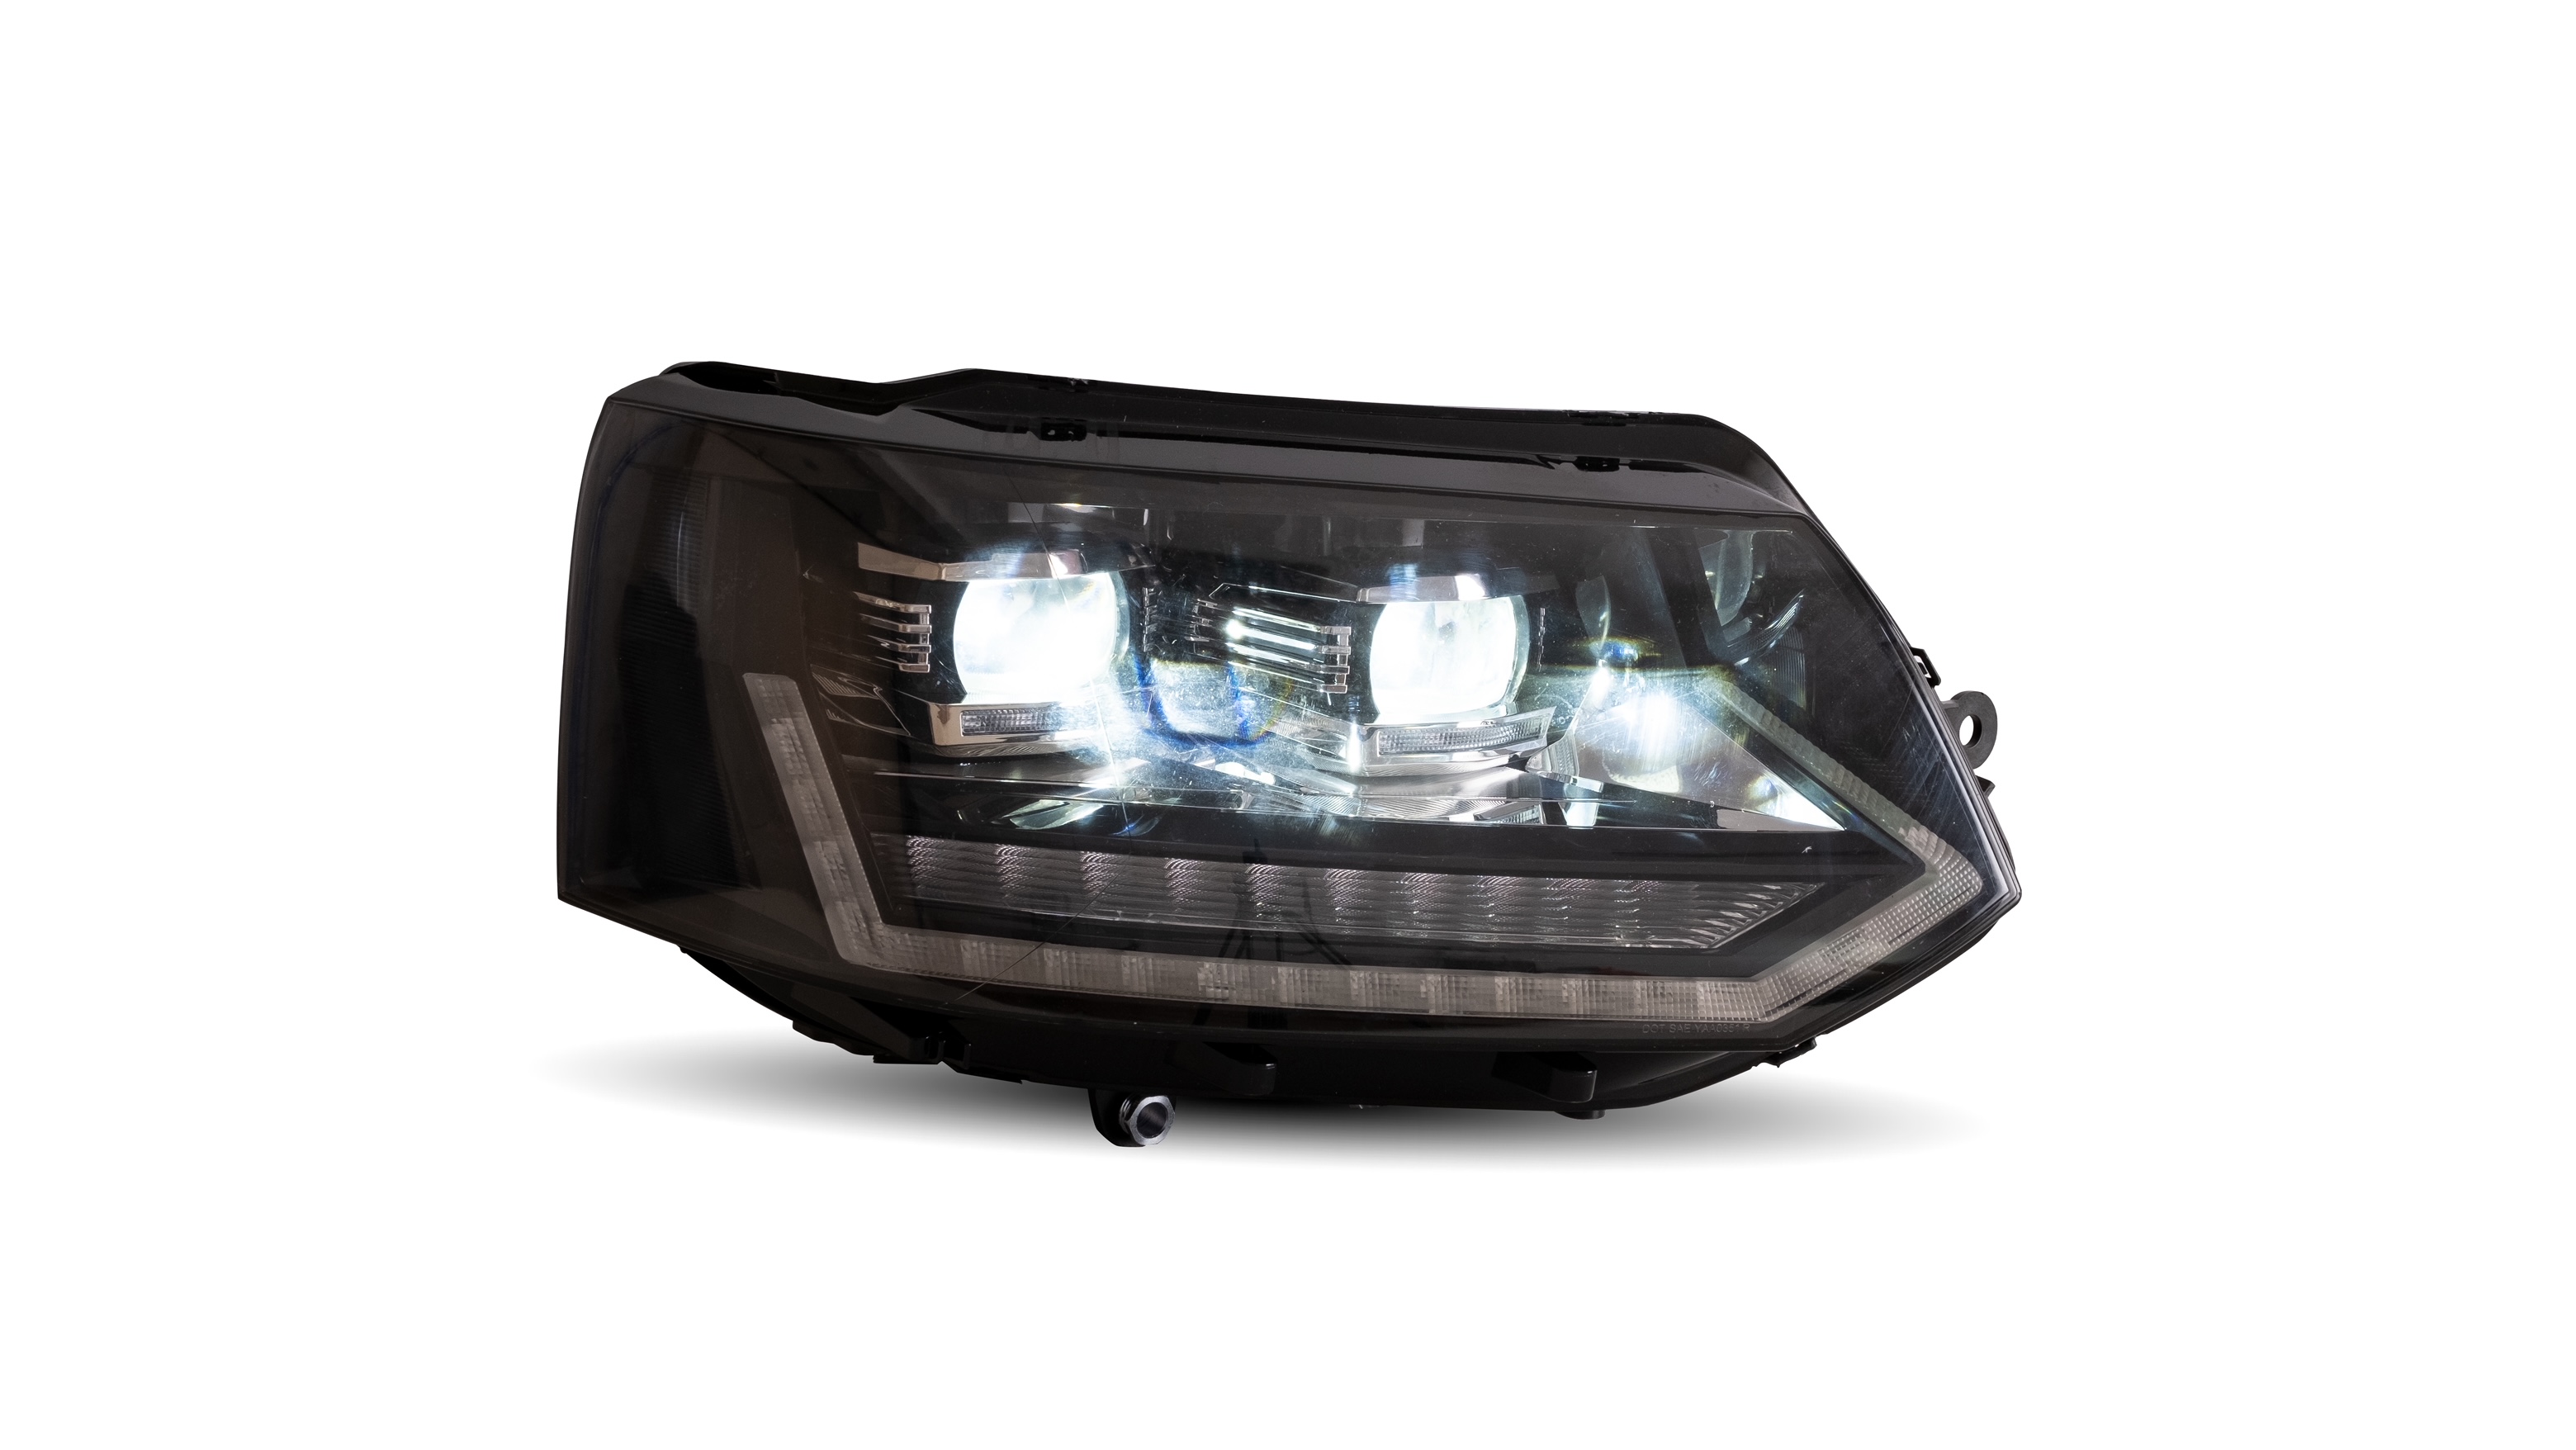 VOLL LED Scheinwerfer Tagfahrlicht für VW T5 GP Facelift Bj. 10-15 Schwarz  mit dynamischem LED Blink, T5 Facelift (GP), VW, Scheinwerfer